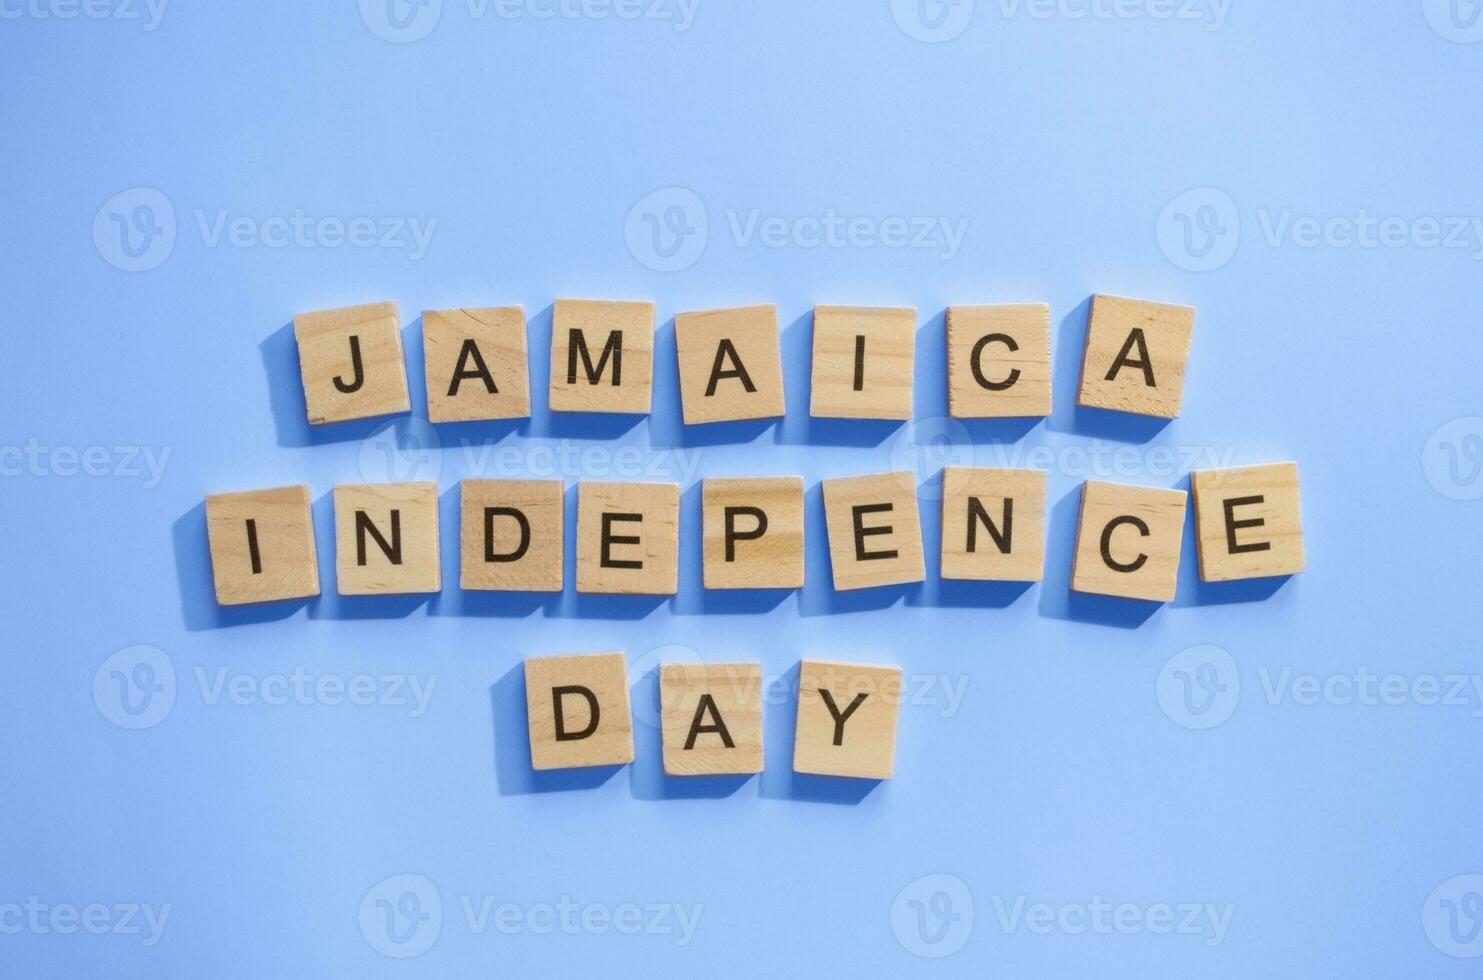 agosto 6, Jamaica independencia día, bandera de Jamaica, minimalista bandera con de madera letras foto